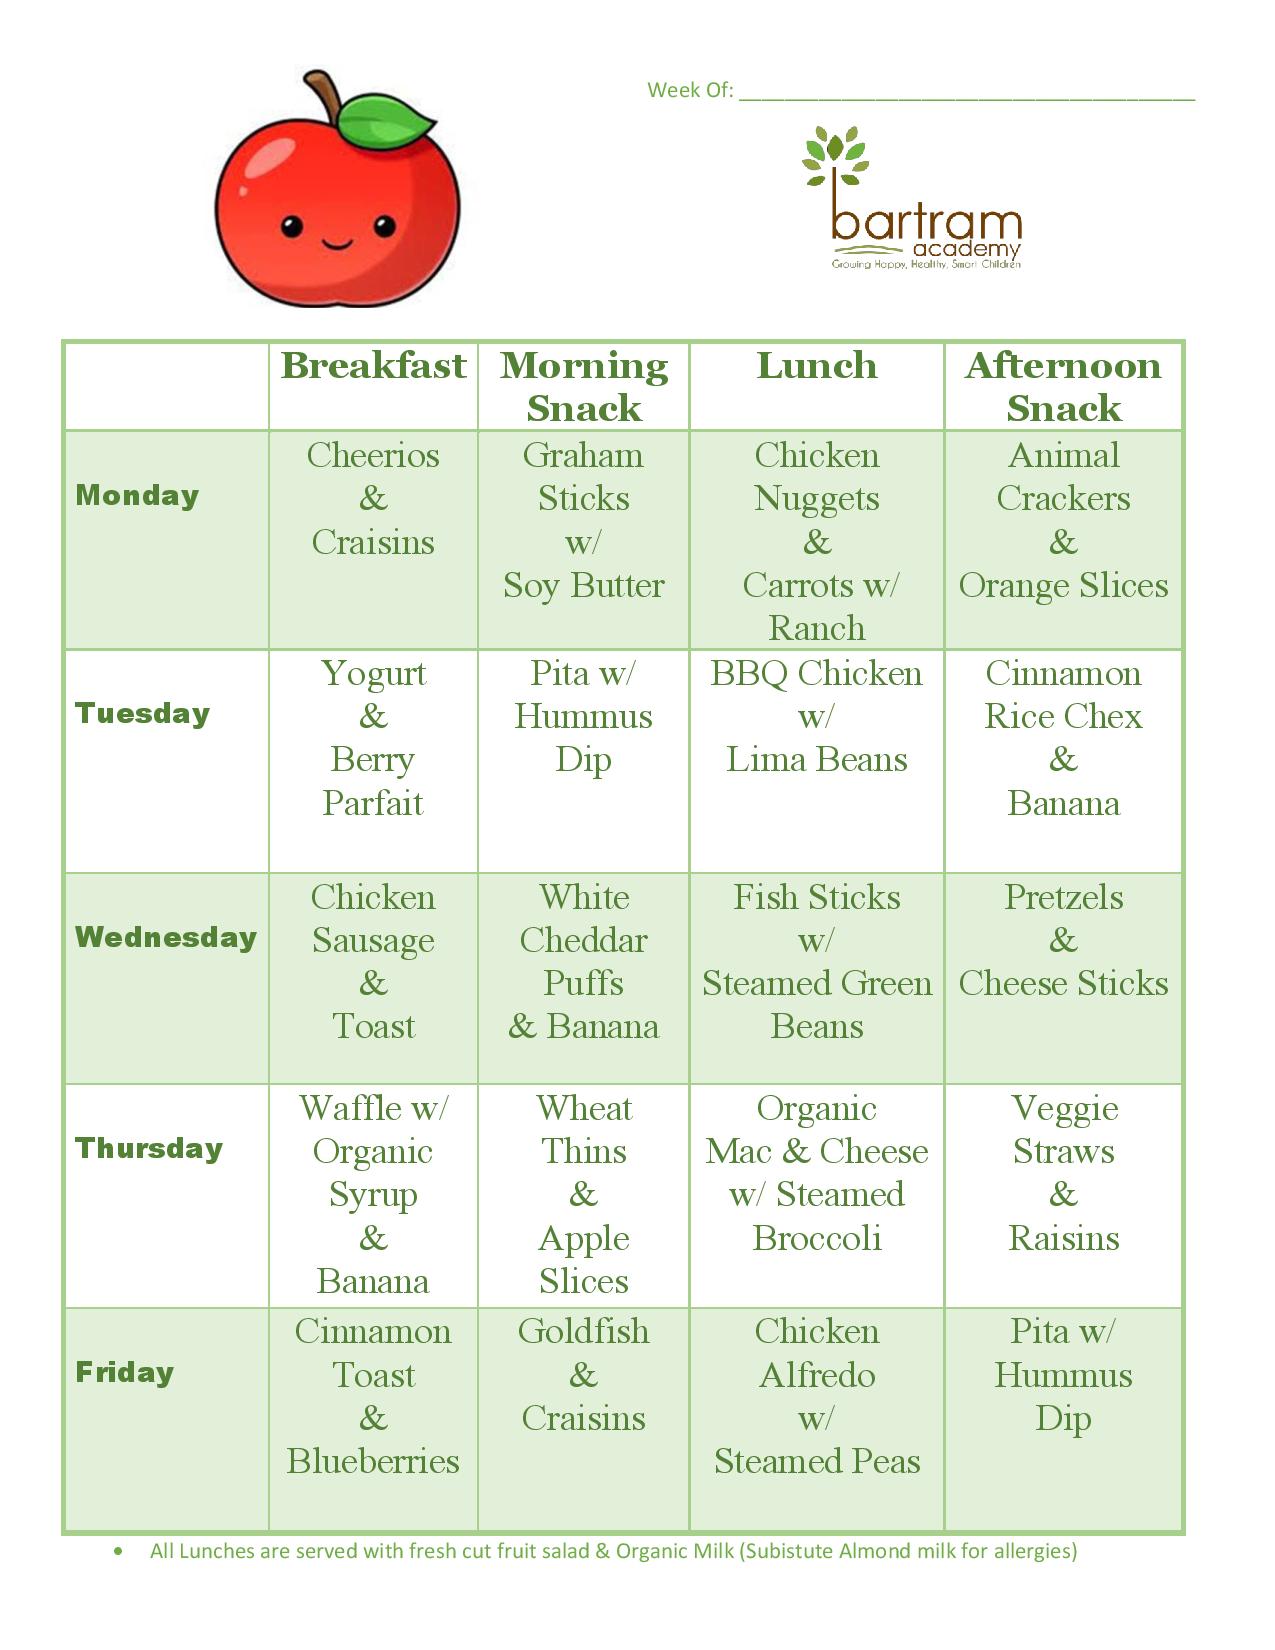 Week 3 menu for Bartram Academy